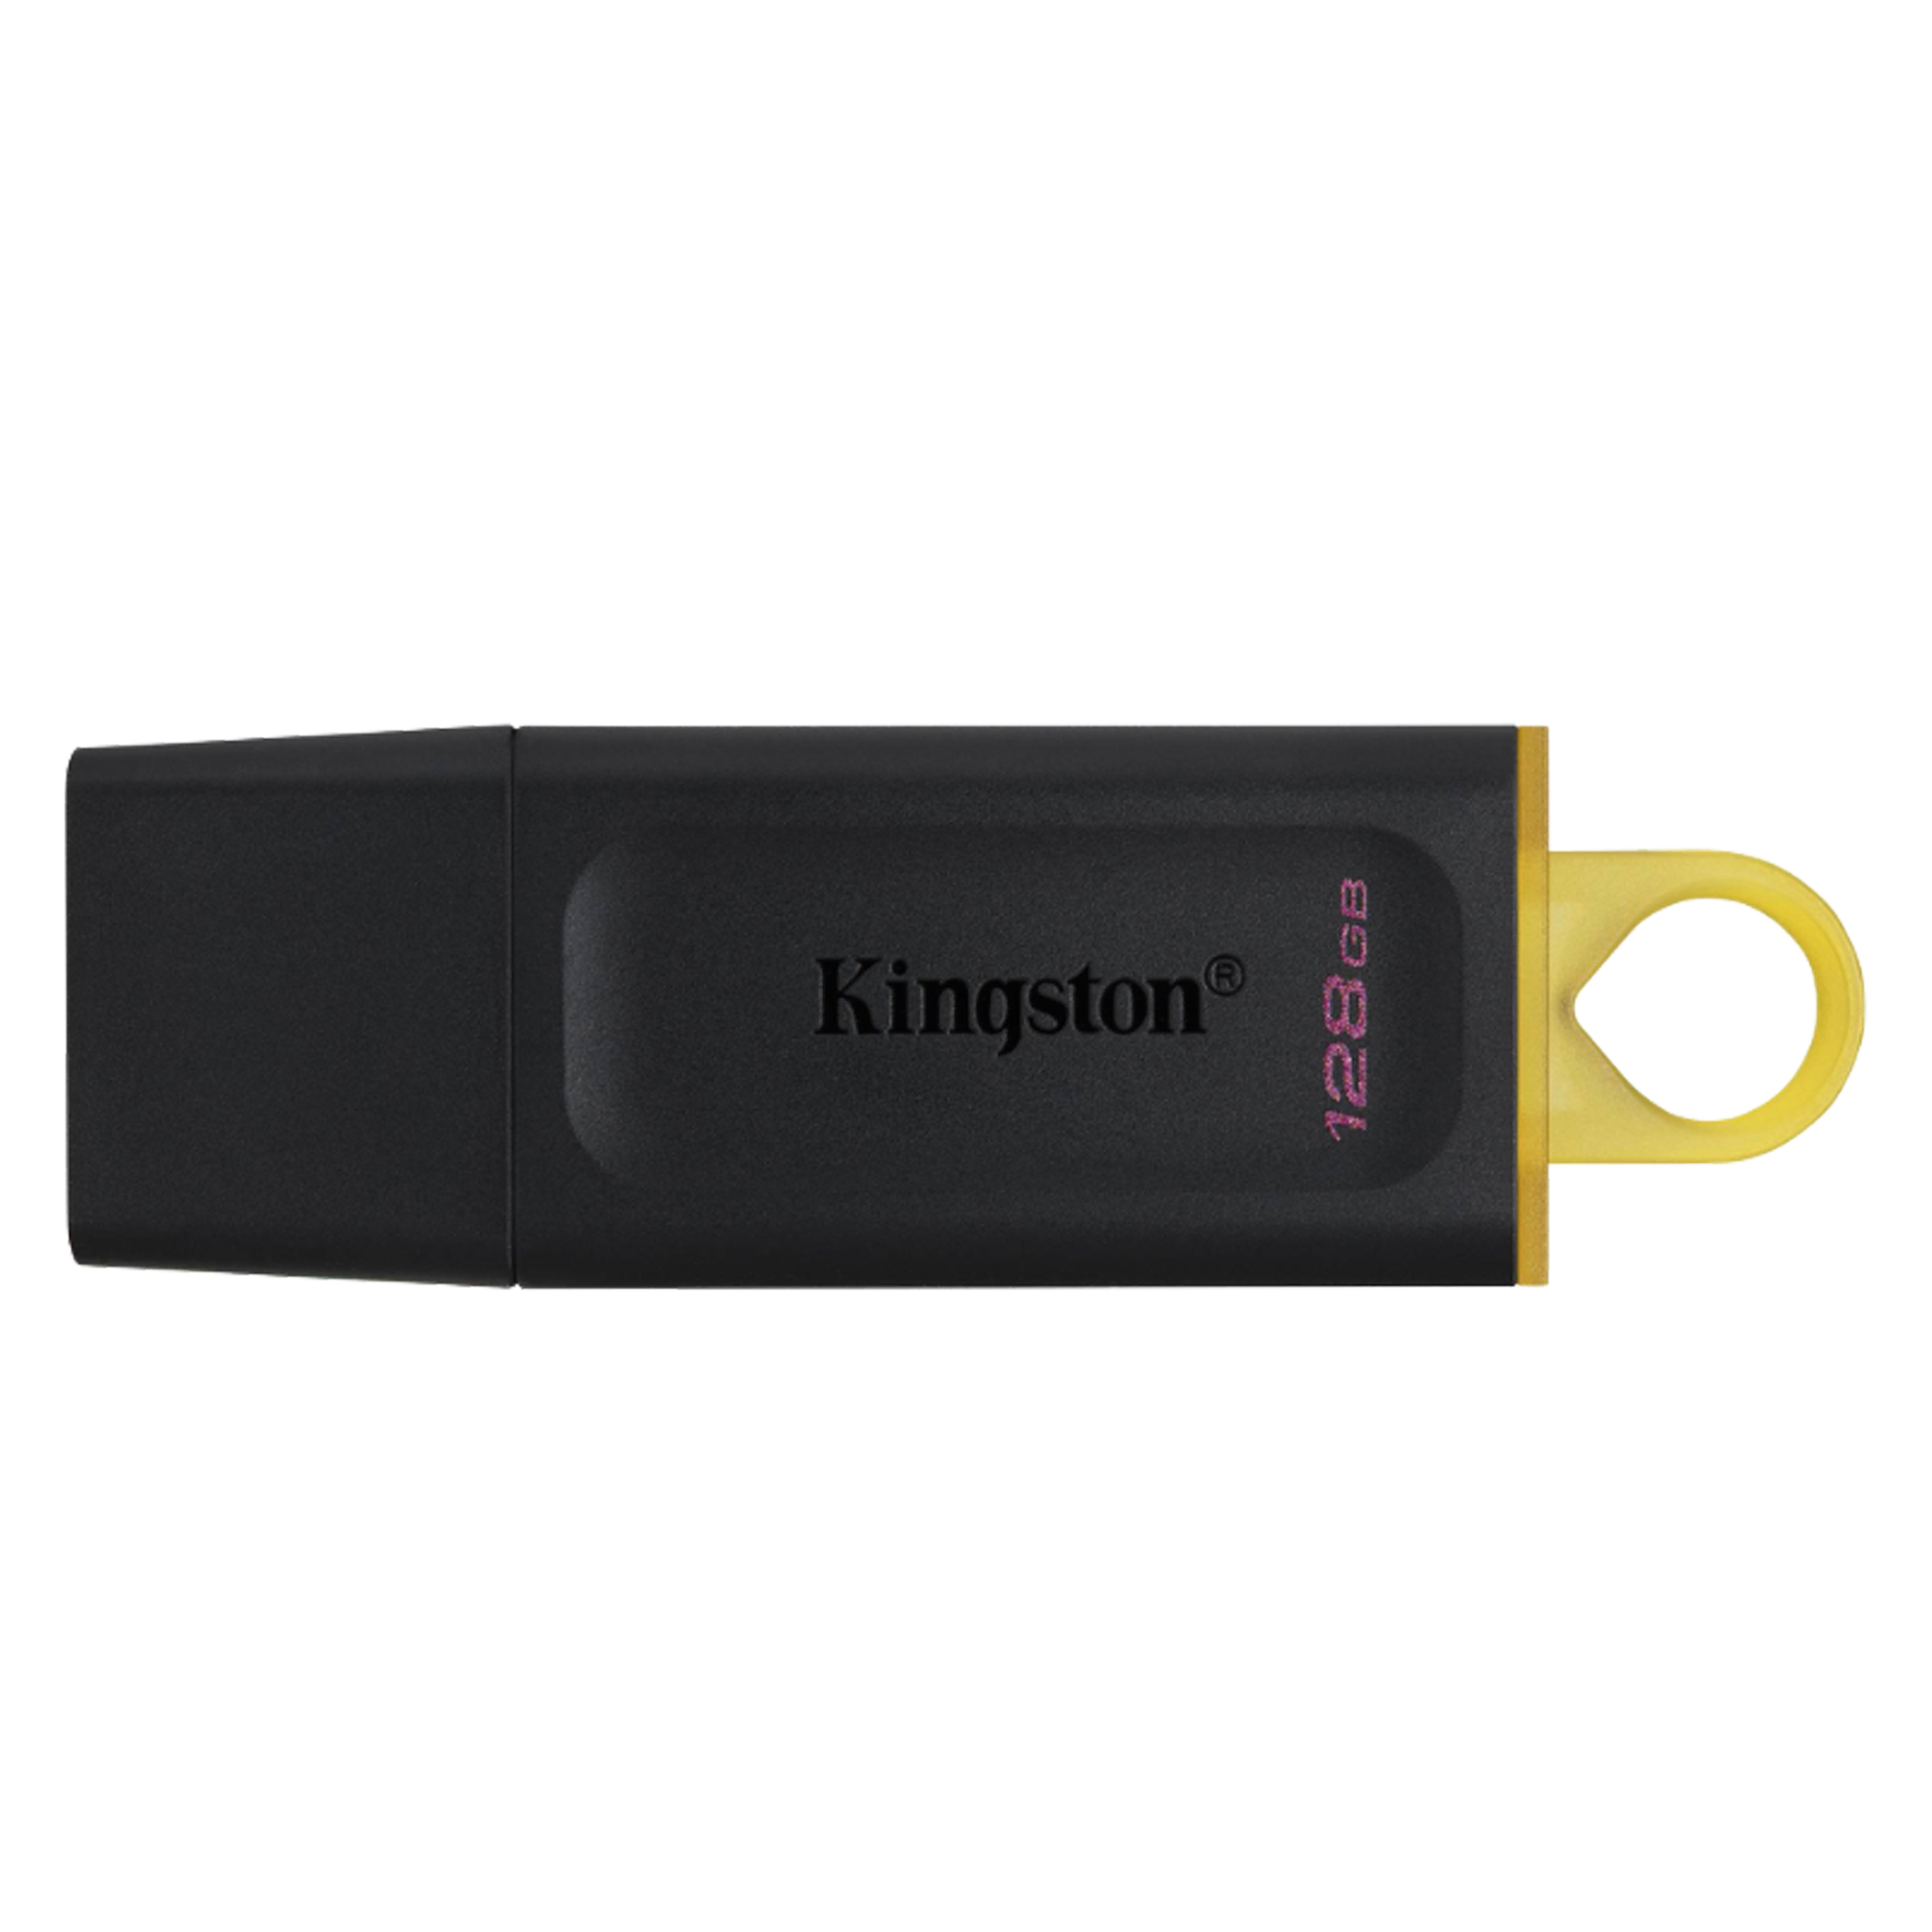 Kingston 128 GB USB Bellek - DTX/128GB  Bilgisayar Çevre Birimleri